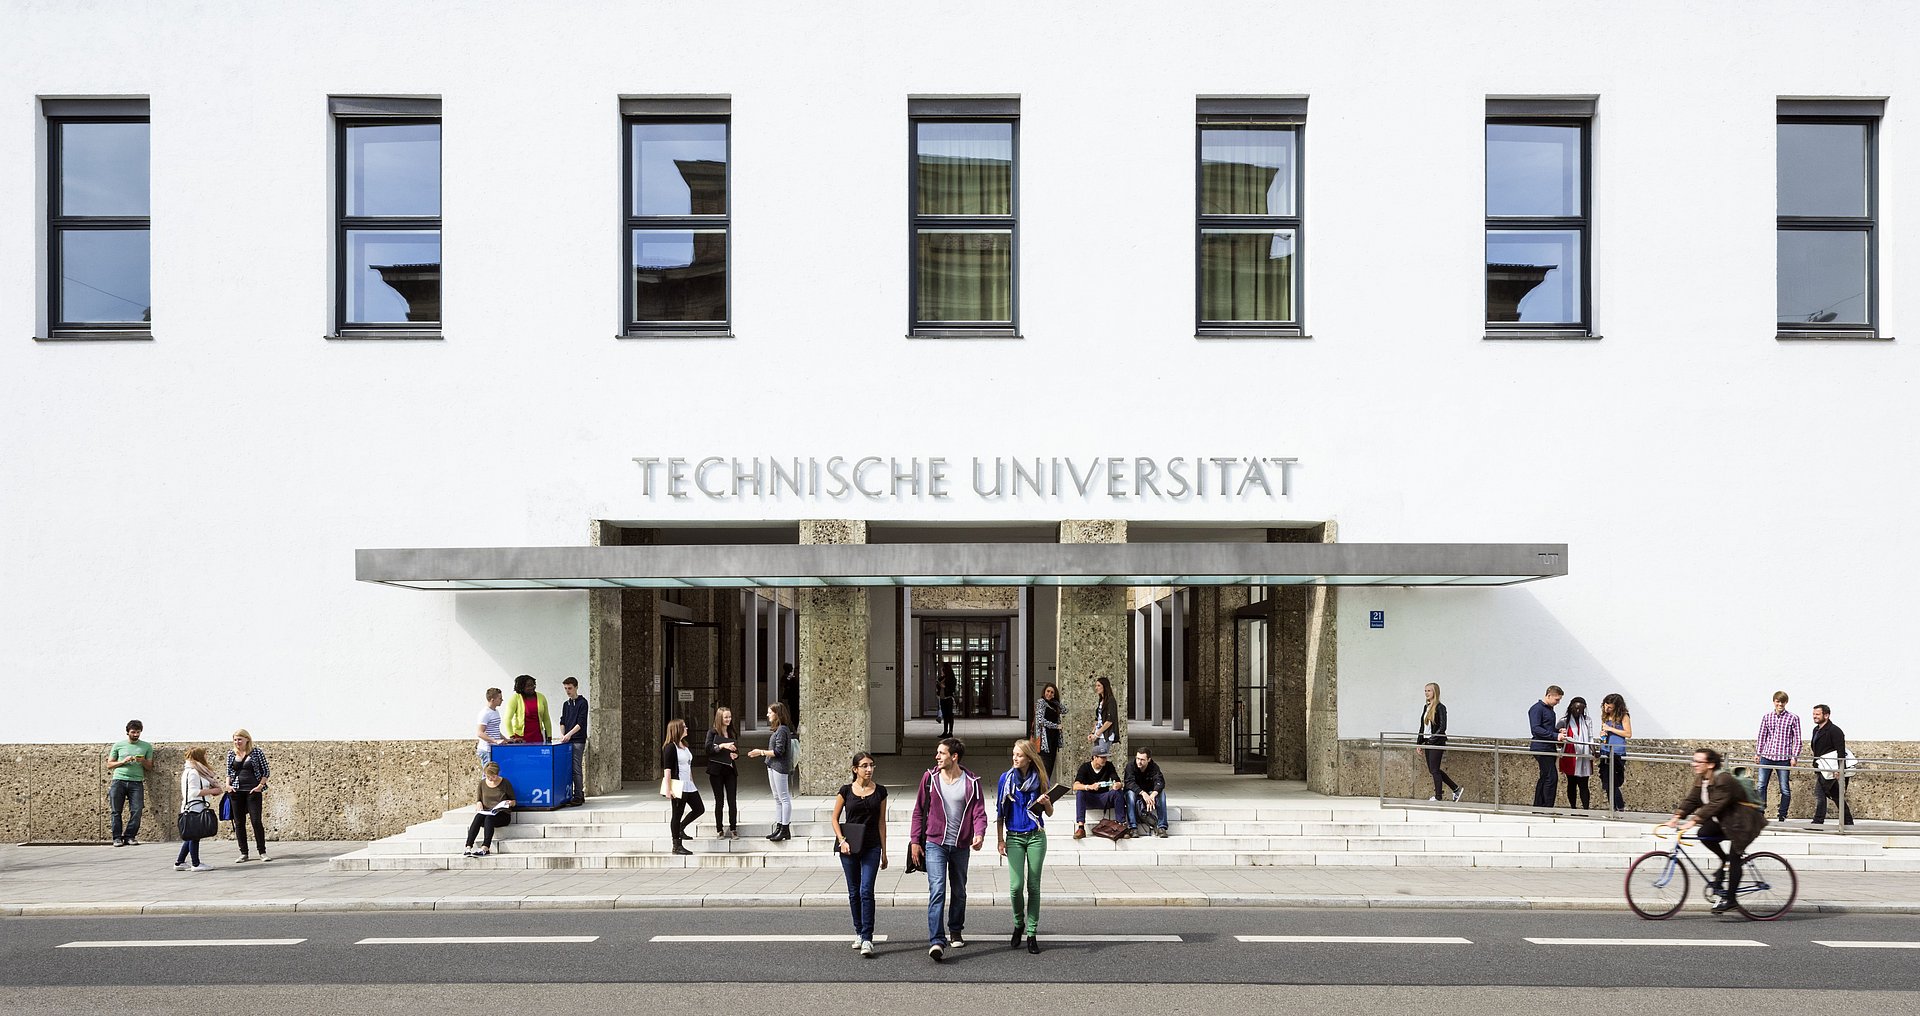 Der Haupteingang der Technischen Universität München am Stammgelände. Einige Studieninteressiere kommen und gehen.